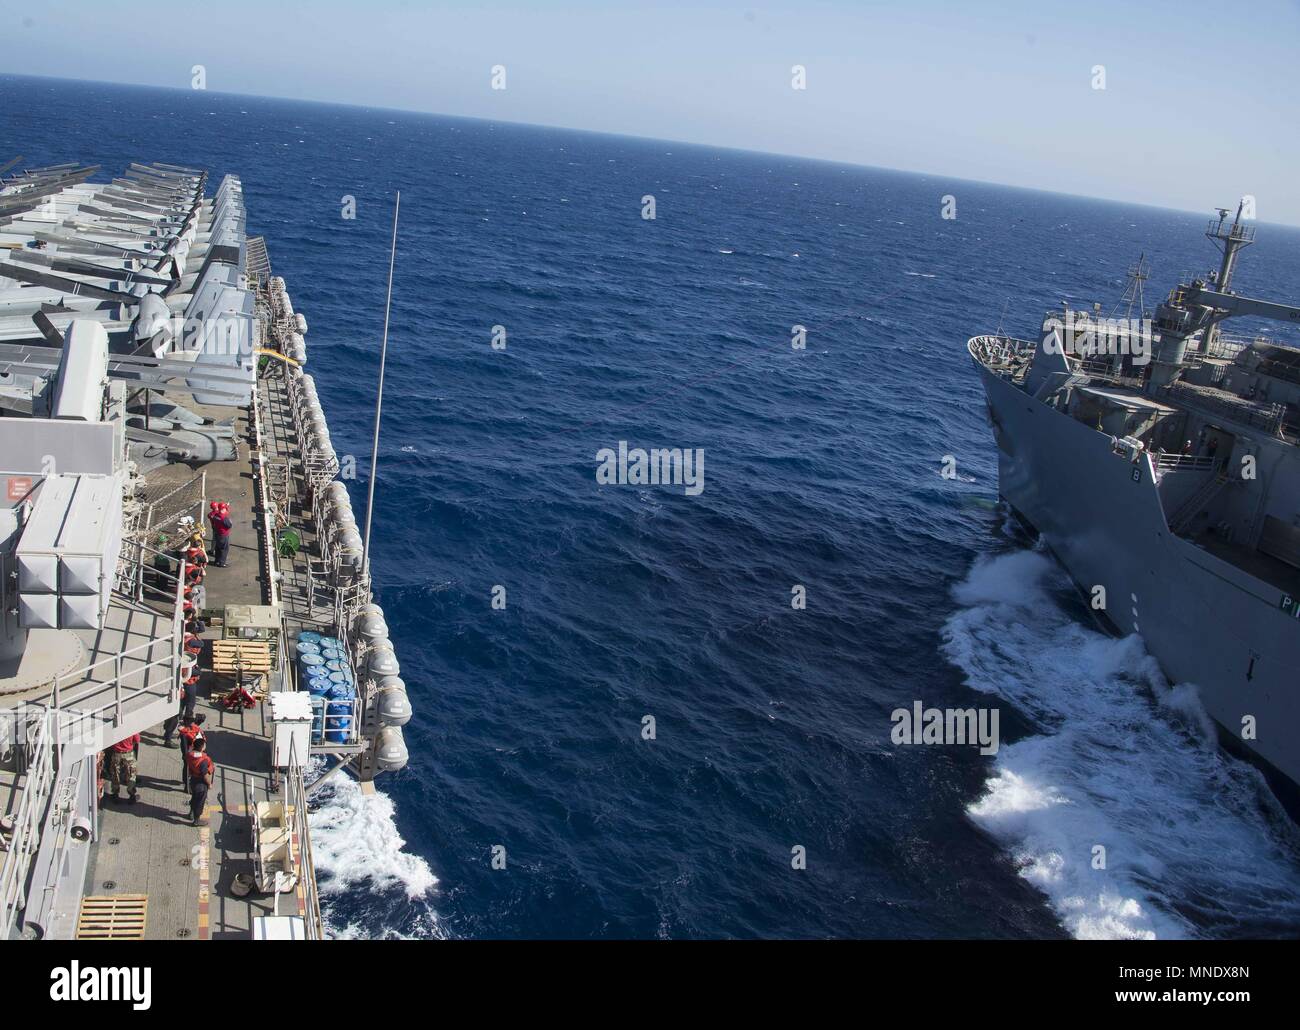 180515-N-AH771-0055 5ª Flota de EE.UU. ZONA DE OPERACIONES (15 de mayo de 2018) La carga seca y municiones buque USNS Amelia Earhart (T-AKE 6) recibe el teléfono y la distancia desde la línea de clase Wasp buque de asalto anfibio USS Iwo Jima (LHD 7) durante una reposición en alta mar, 15 de mayo de 2018, 15 de mayo de 2018. Iwo Jima, homeported en Mayport, Florida, está en el despliegue de la Quinta Flota de EE.UU. zona de operaciones en apoyo de las operaciones de seguridad marítima para tranquilizar a los aliados y socios, y preservar la libertad de navegación y el libre flujo del comercio en la región. (Ee.Uu. Navy photo by Mass Communication Specialist Foto de stock